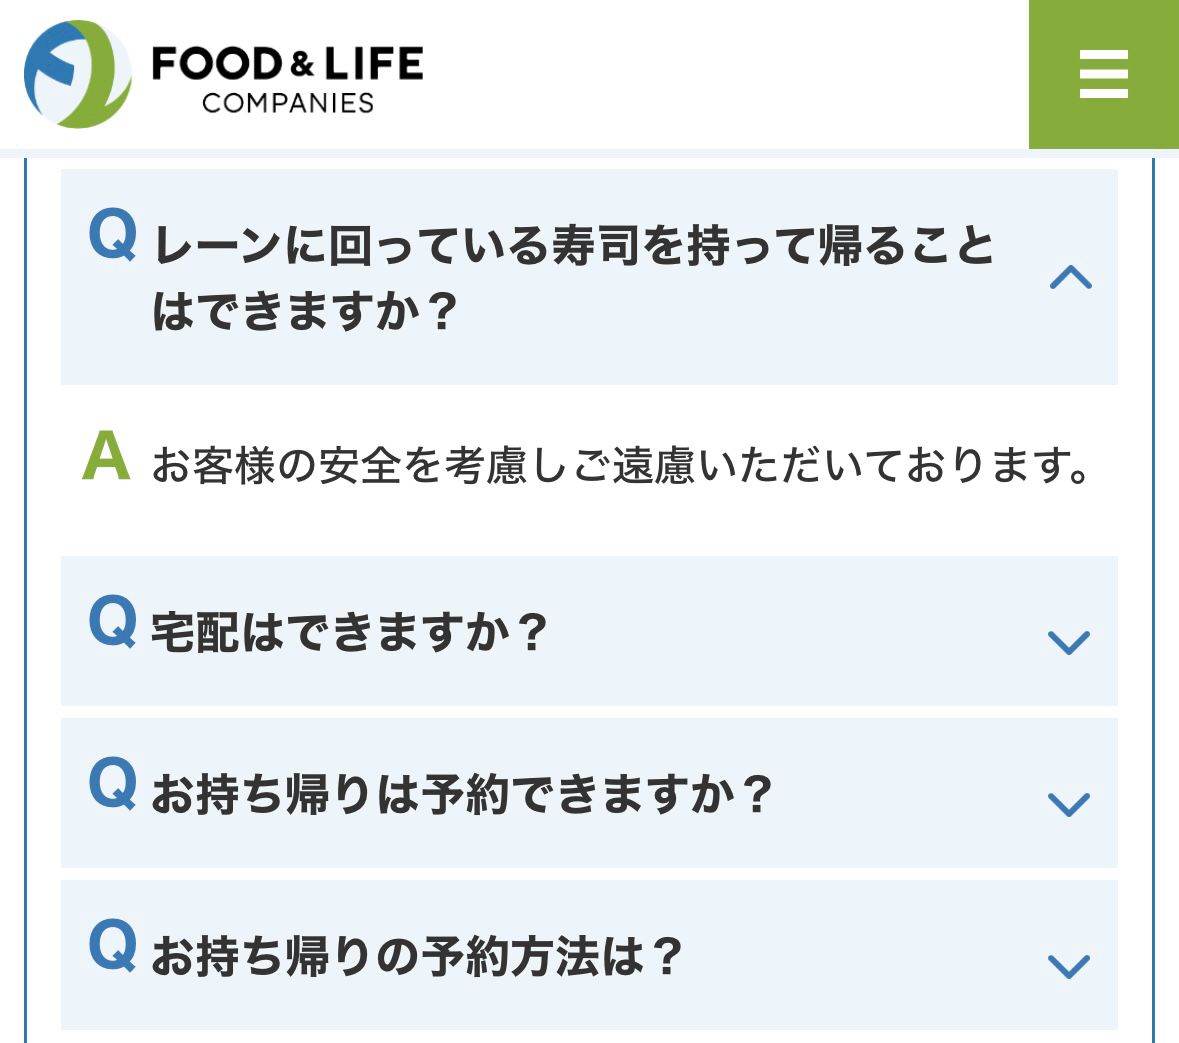 小紅書網民投訴日本迴轉壽司吃不完壽司不能打包：是文化差異嗎？